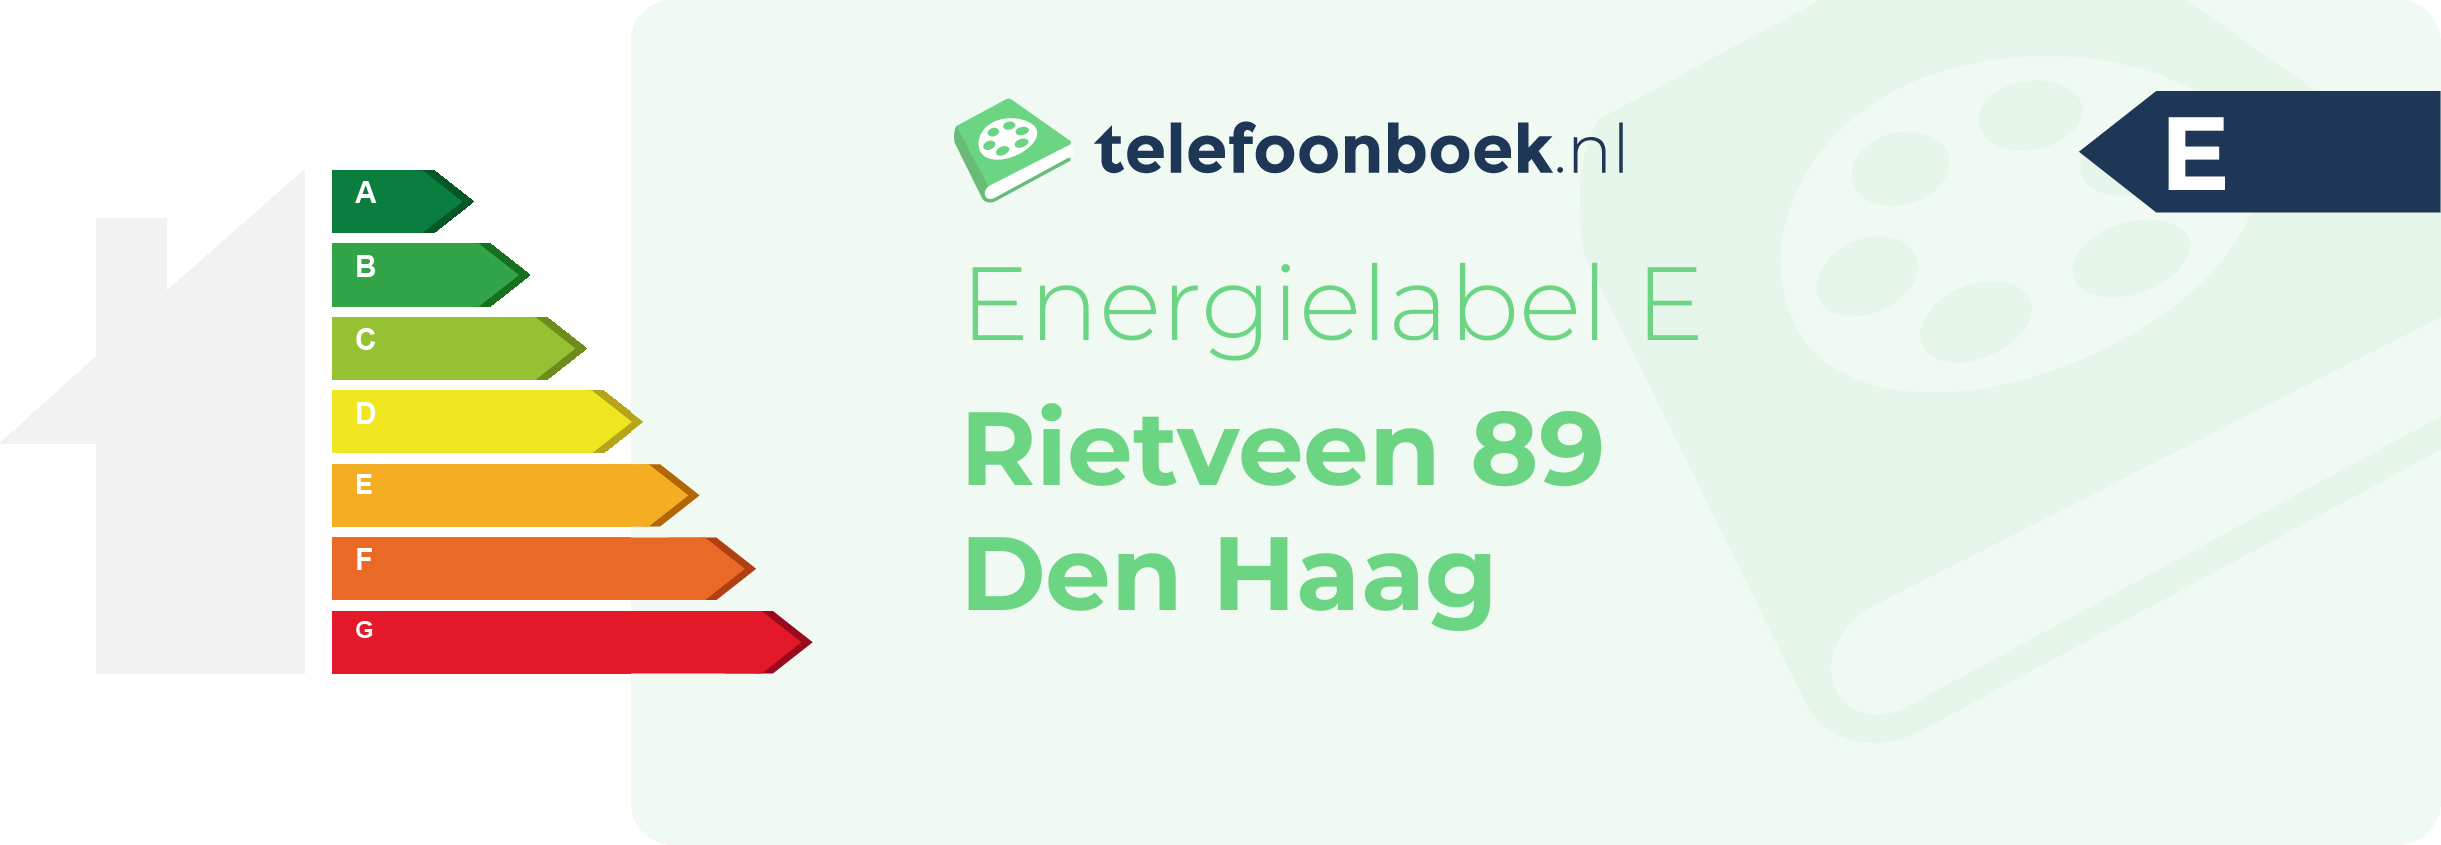 Energielabel Rietveen 89 Den Haag